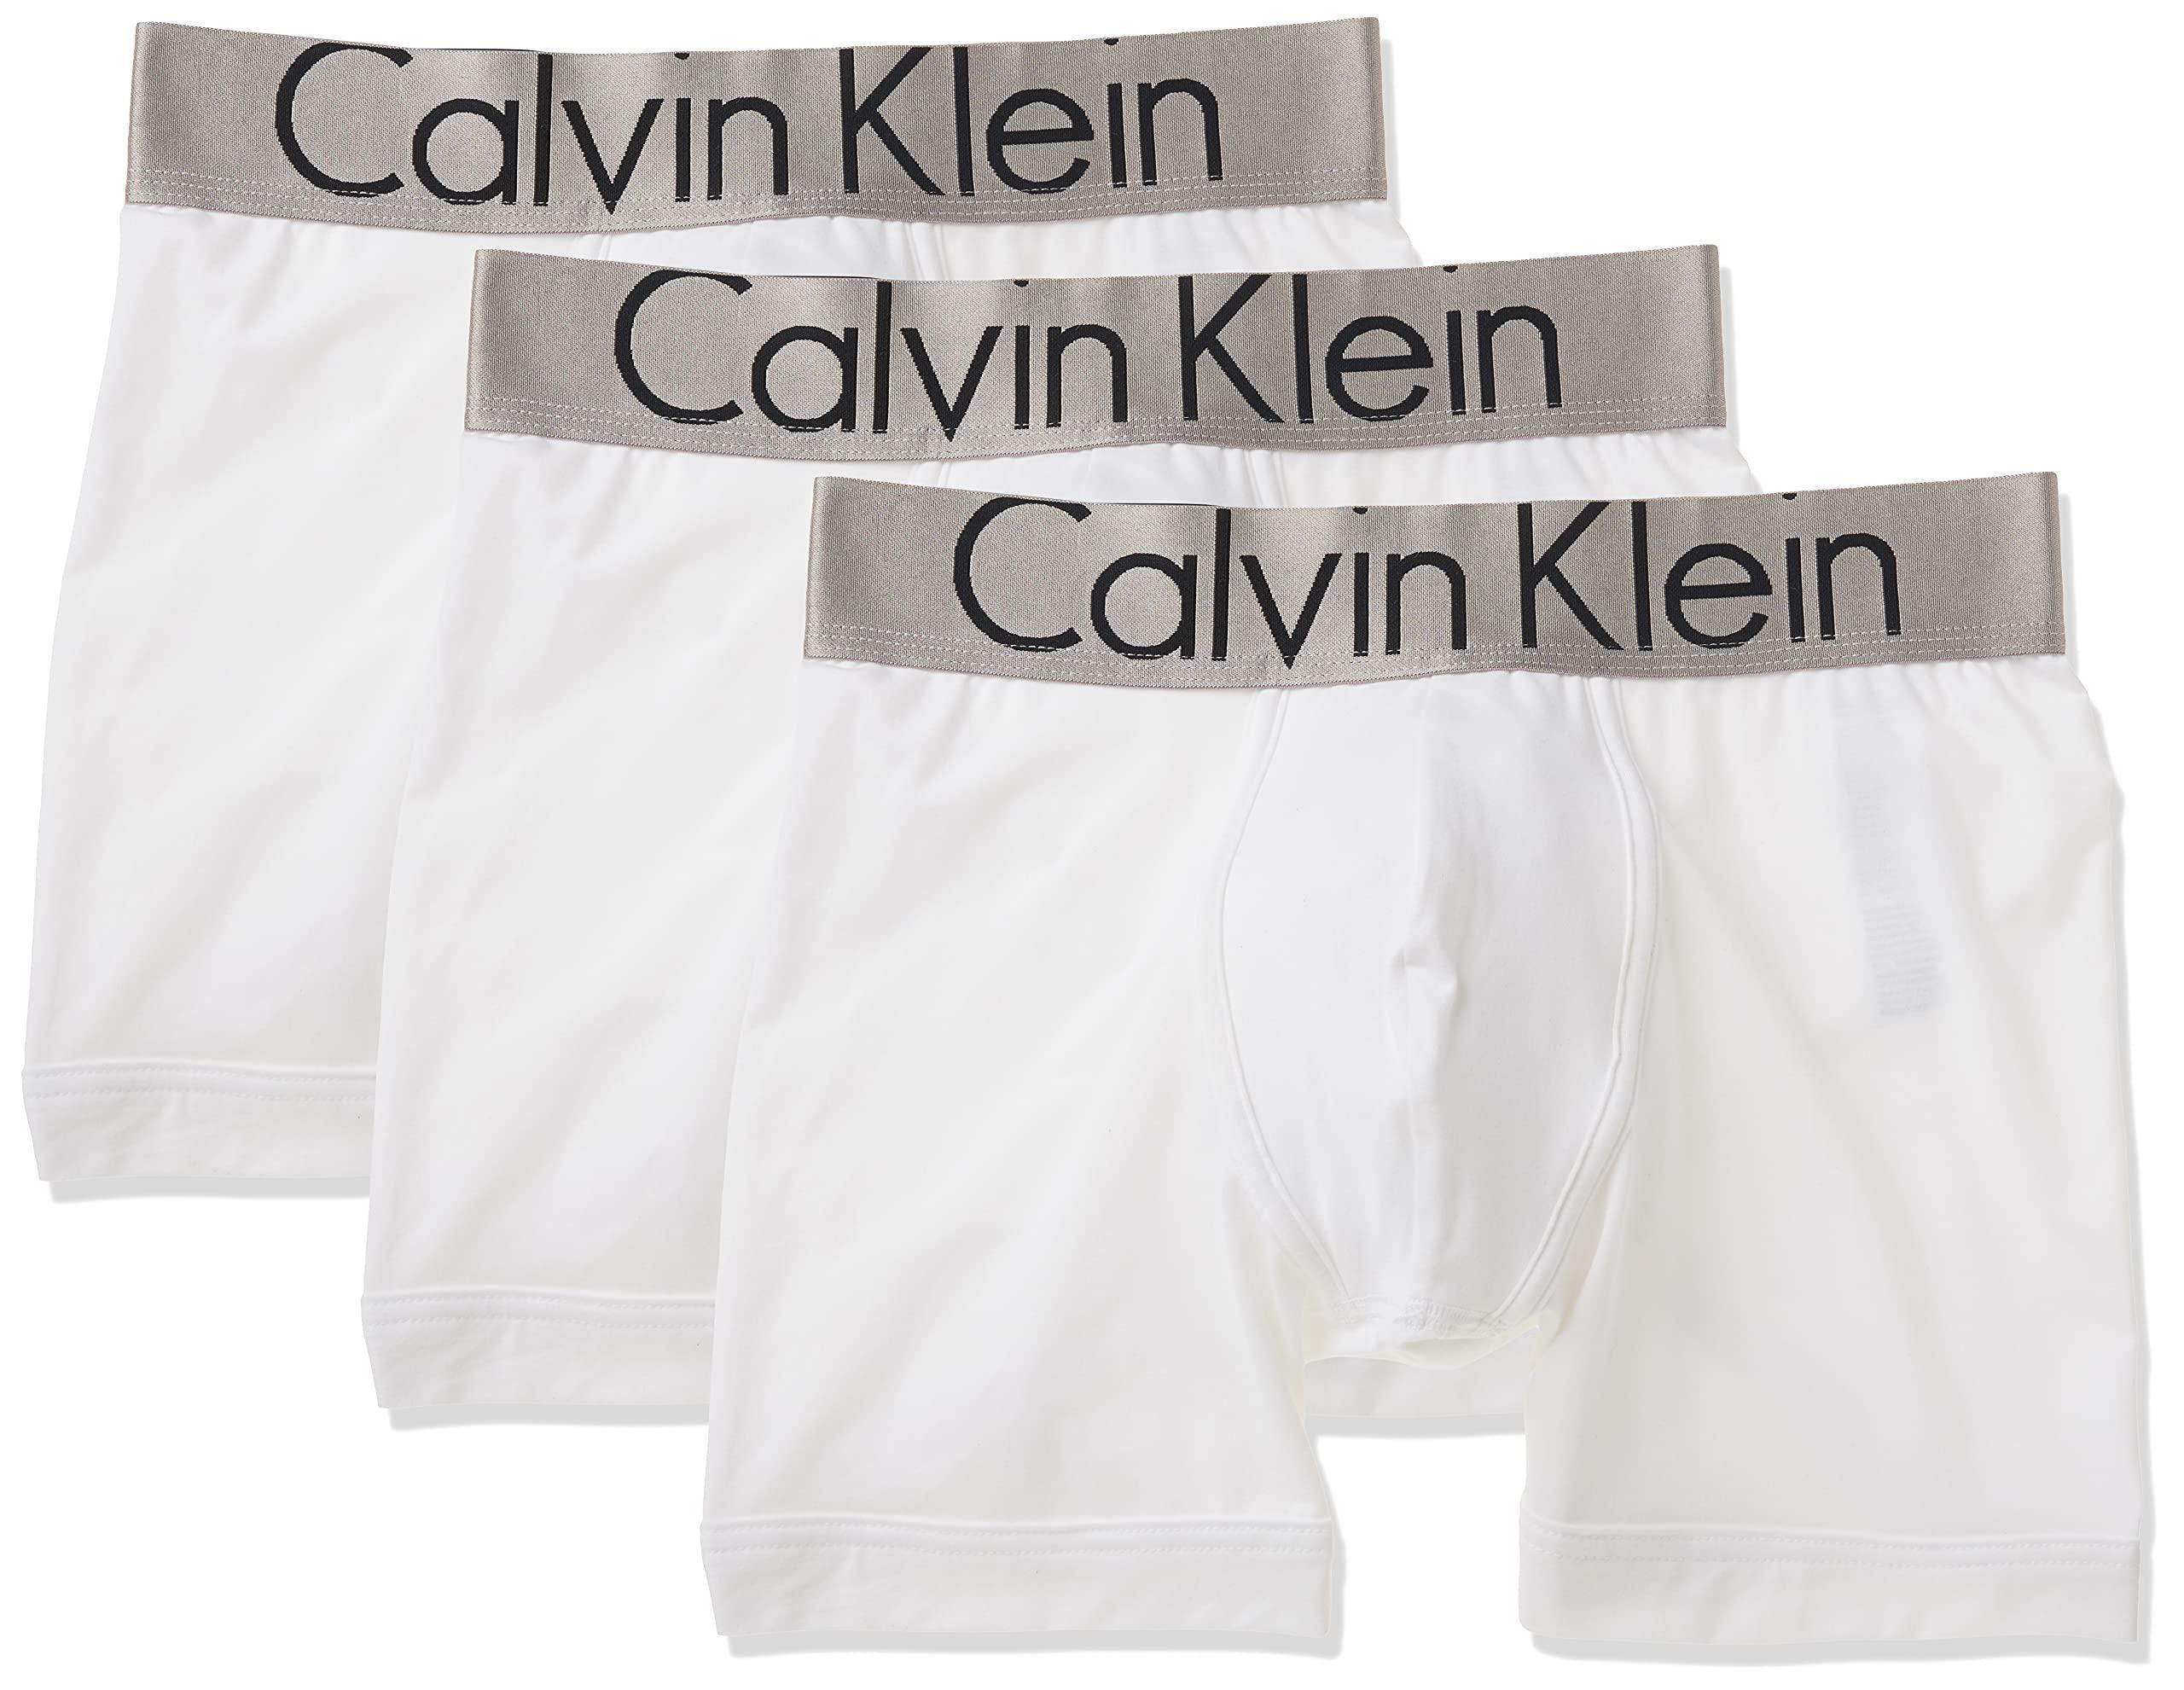 CALVIN KLEIN UNDERWEAR Calvin Klein FOCUSED FIT - Boxer - Men's - white -  Private Sport Shop